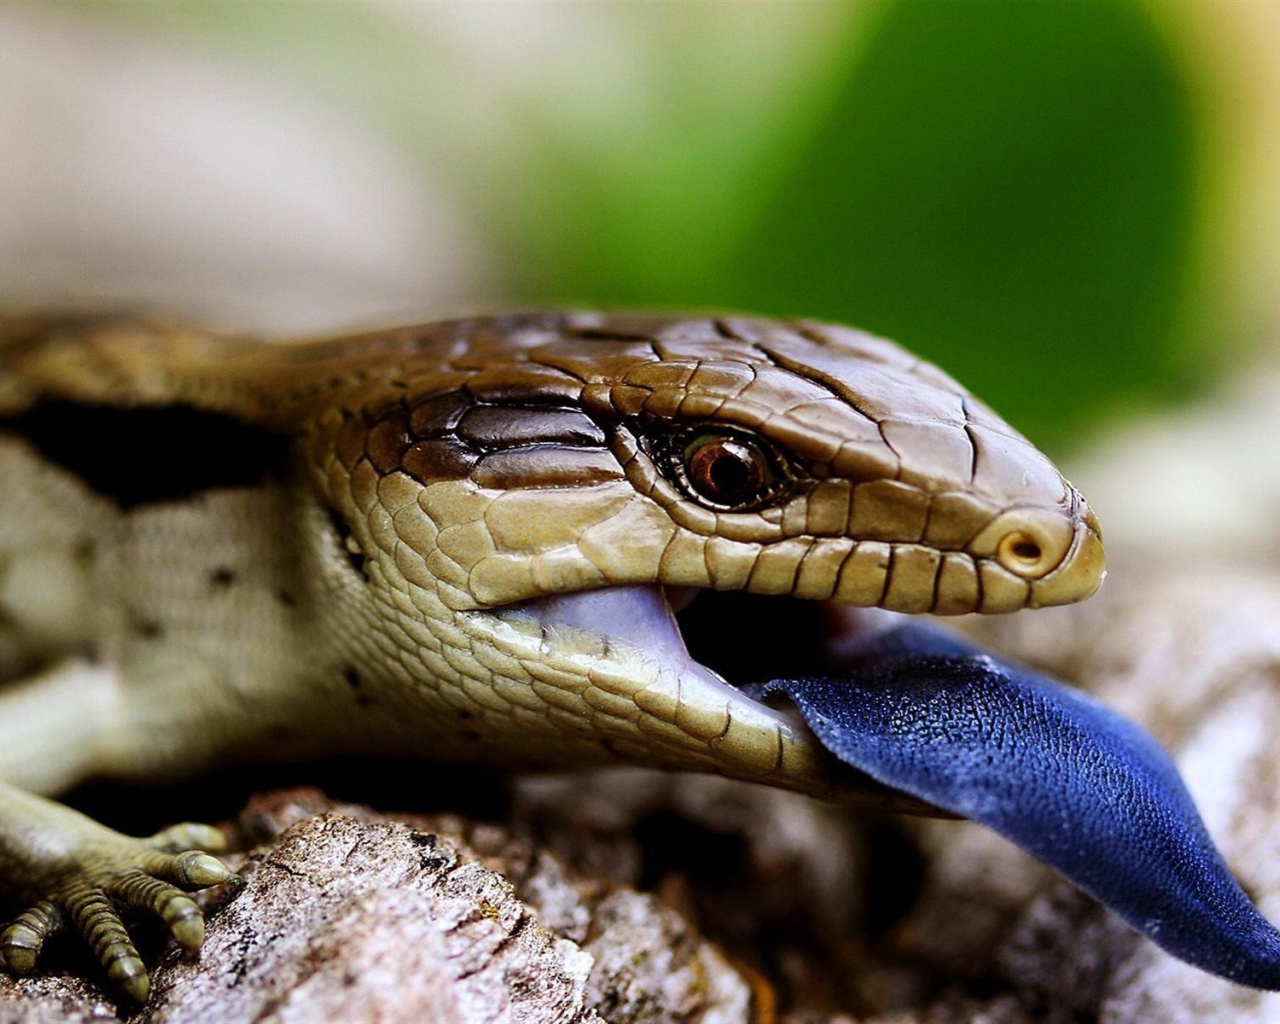 Рептилия с синим языком